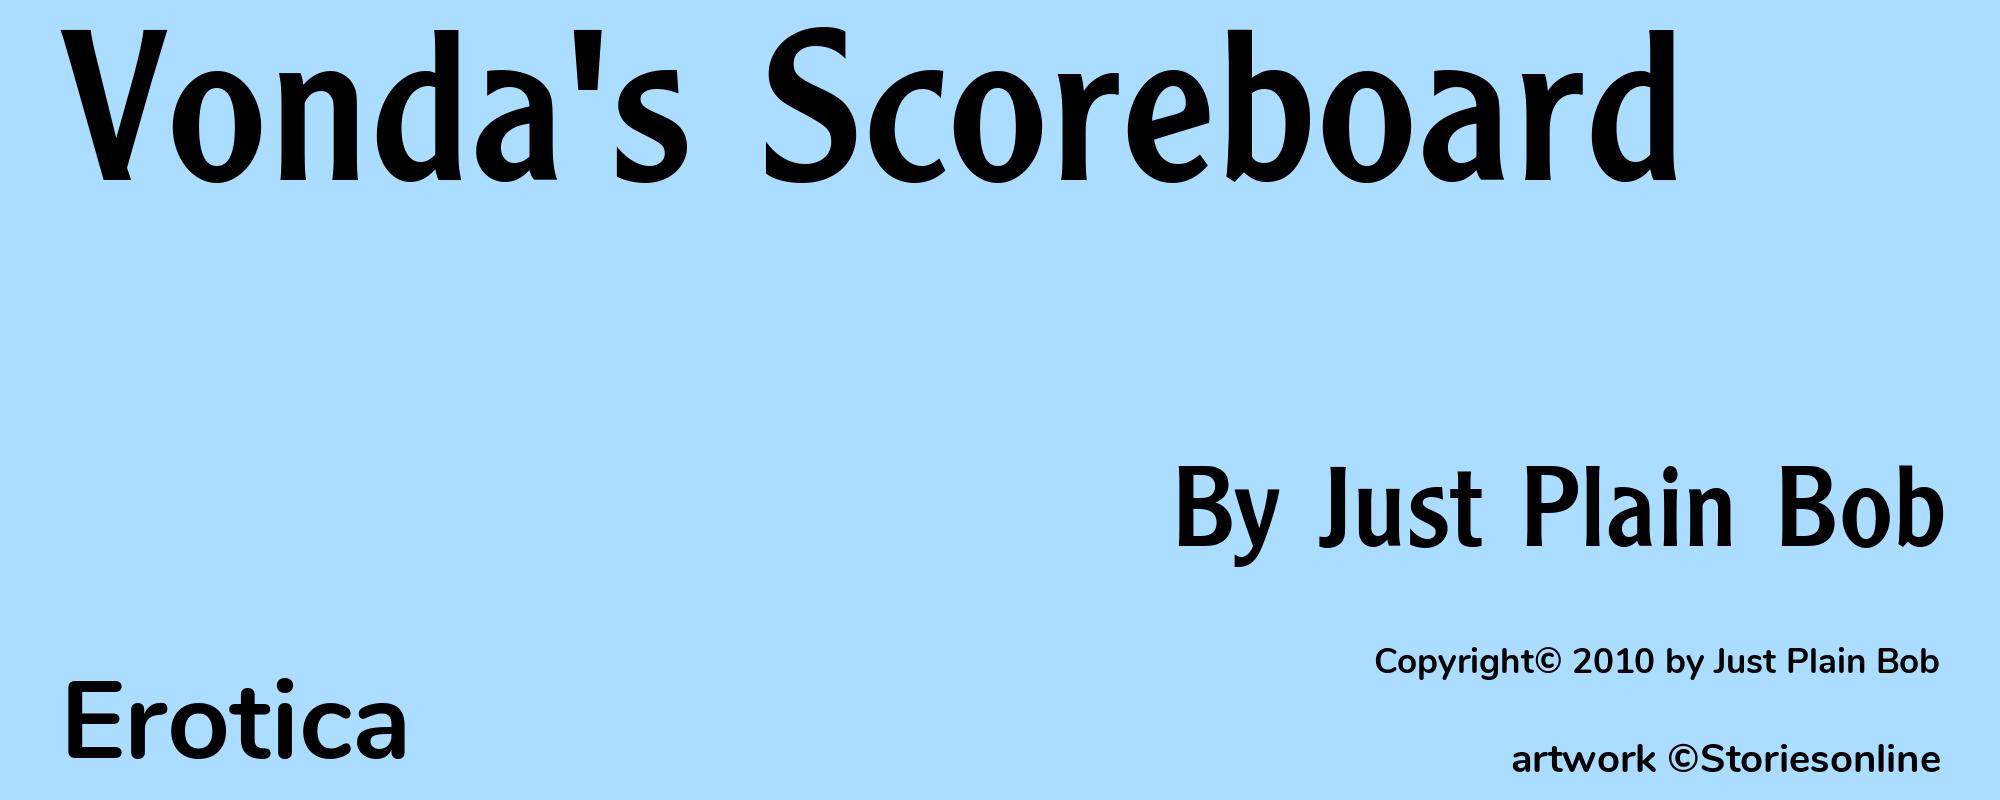 Vonda's Scoreboard - Cover